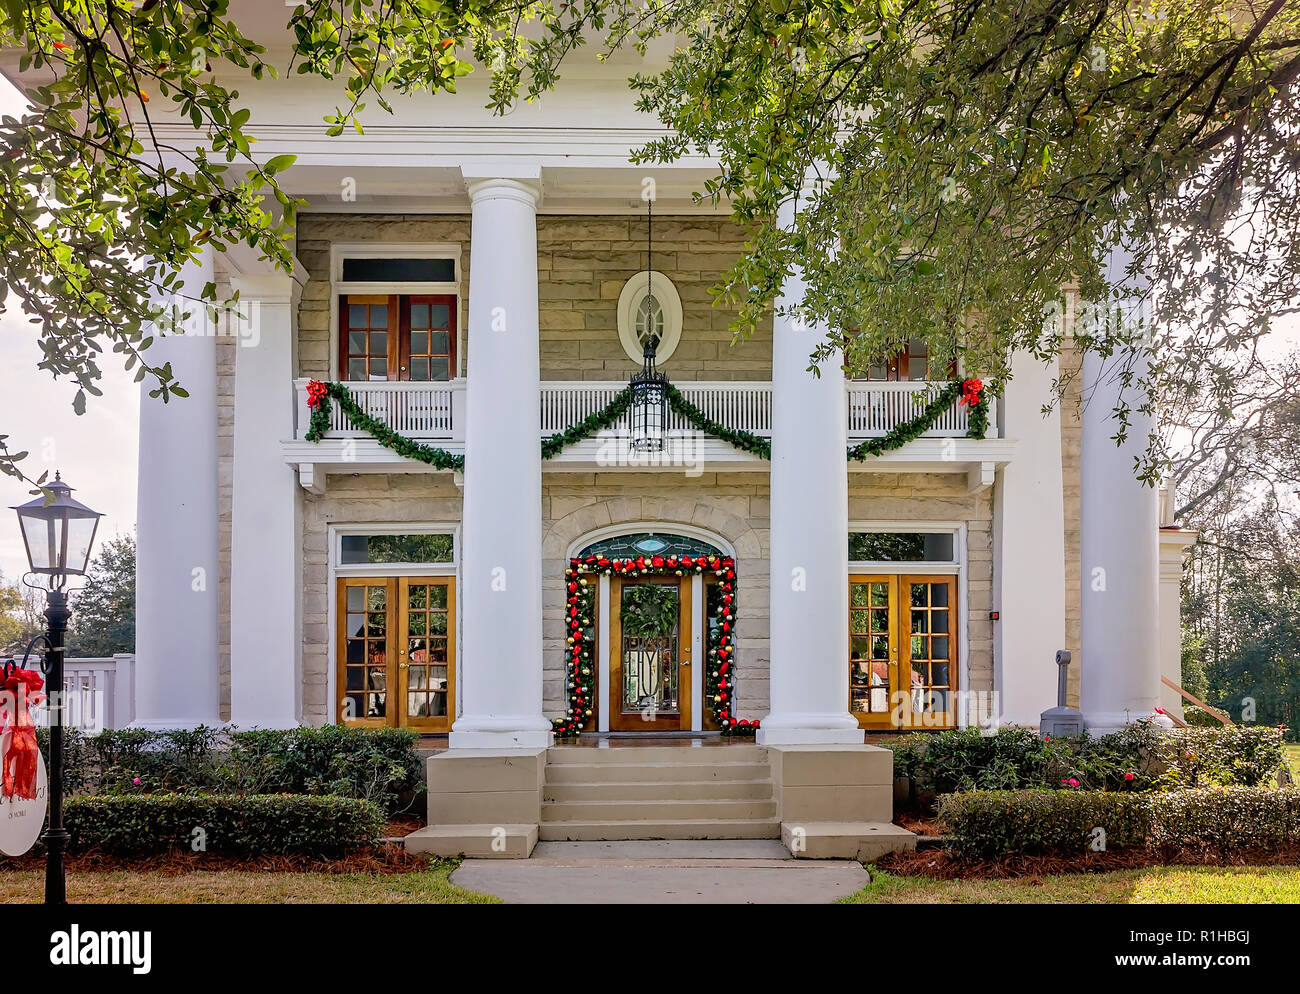 Les piliers, un lieu d'événements, est décorée pour Noël, 18 décembre 2017, à Mobile, en Alabama. Banque D'Images